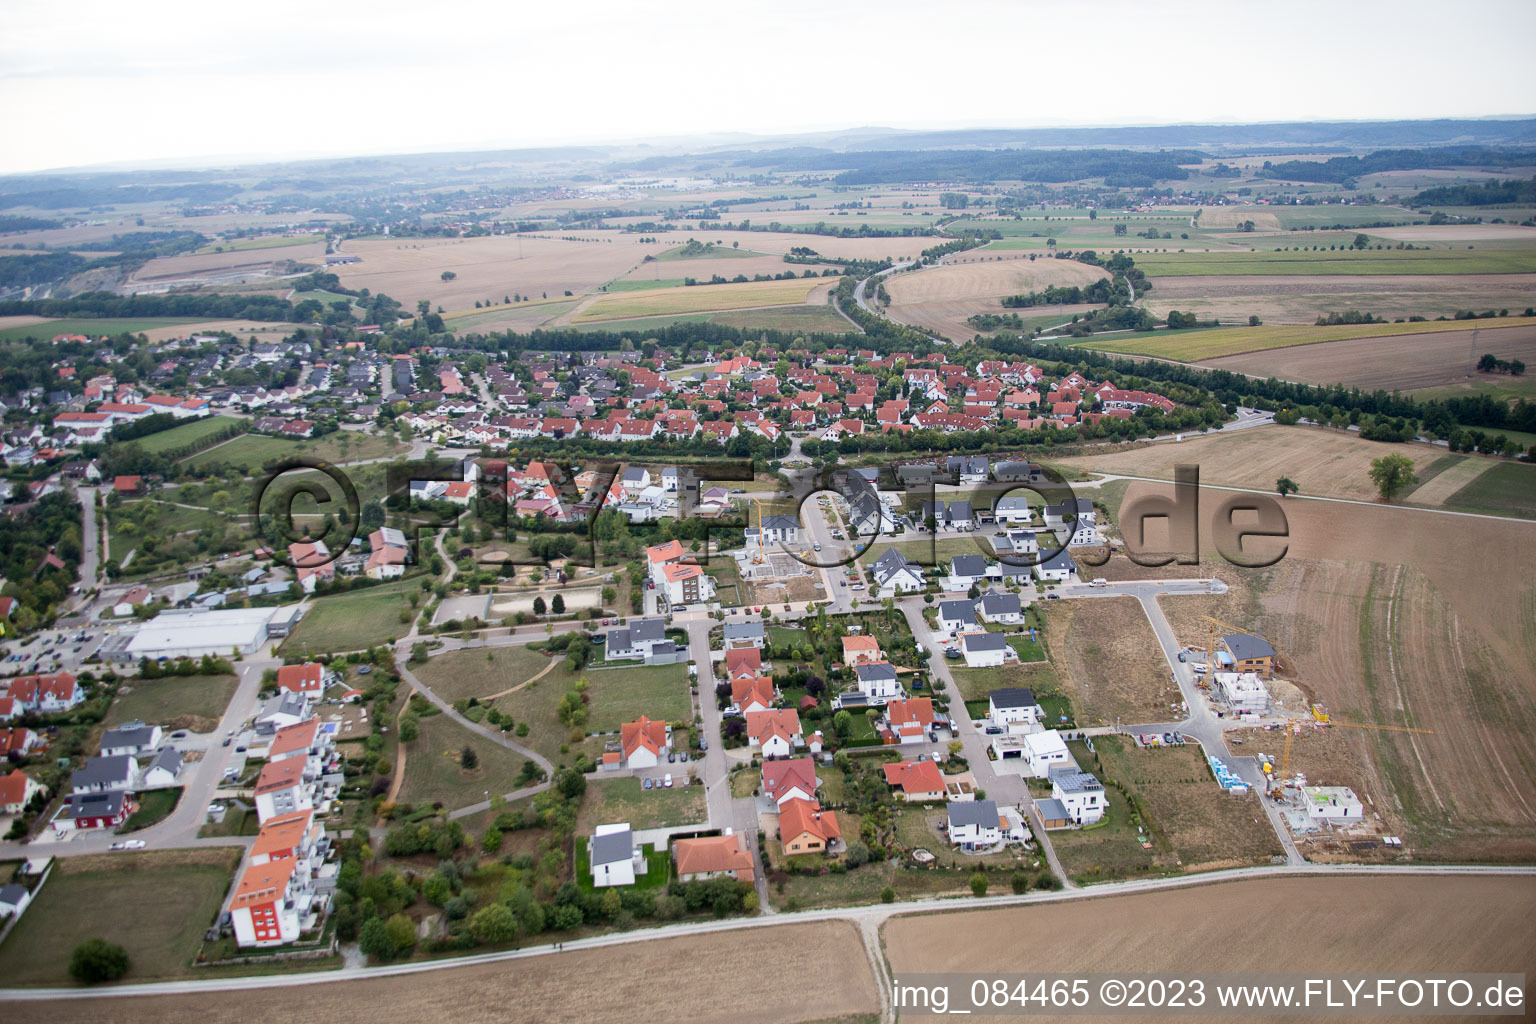 Vue aérienne de Quartier de Buch à Vellberg dans le département Bade-Wurtemberg, Allemagne